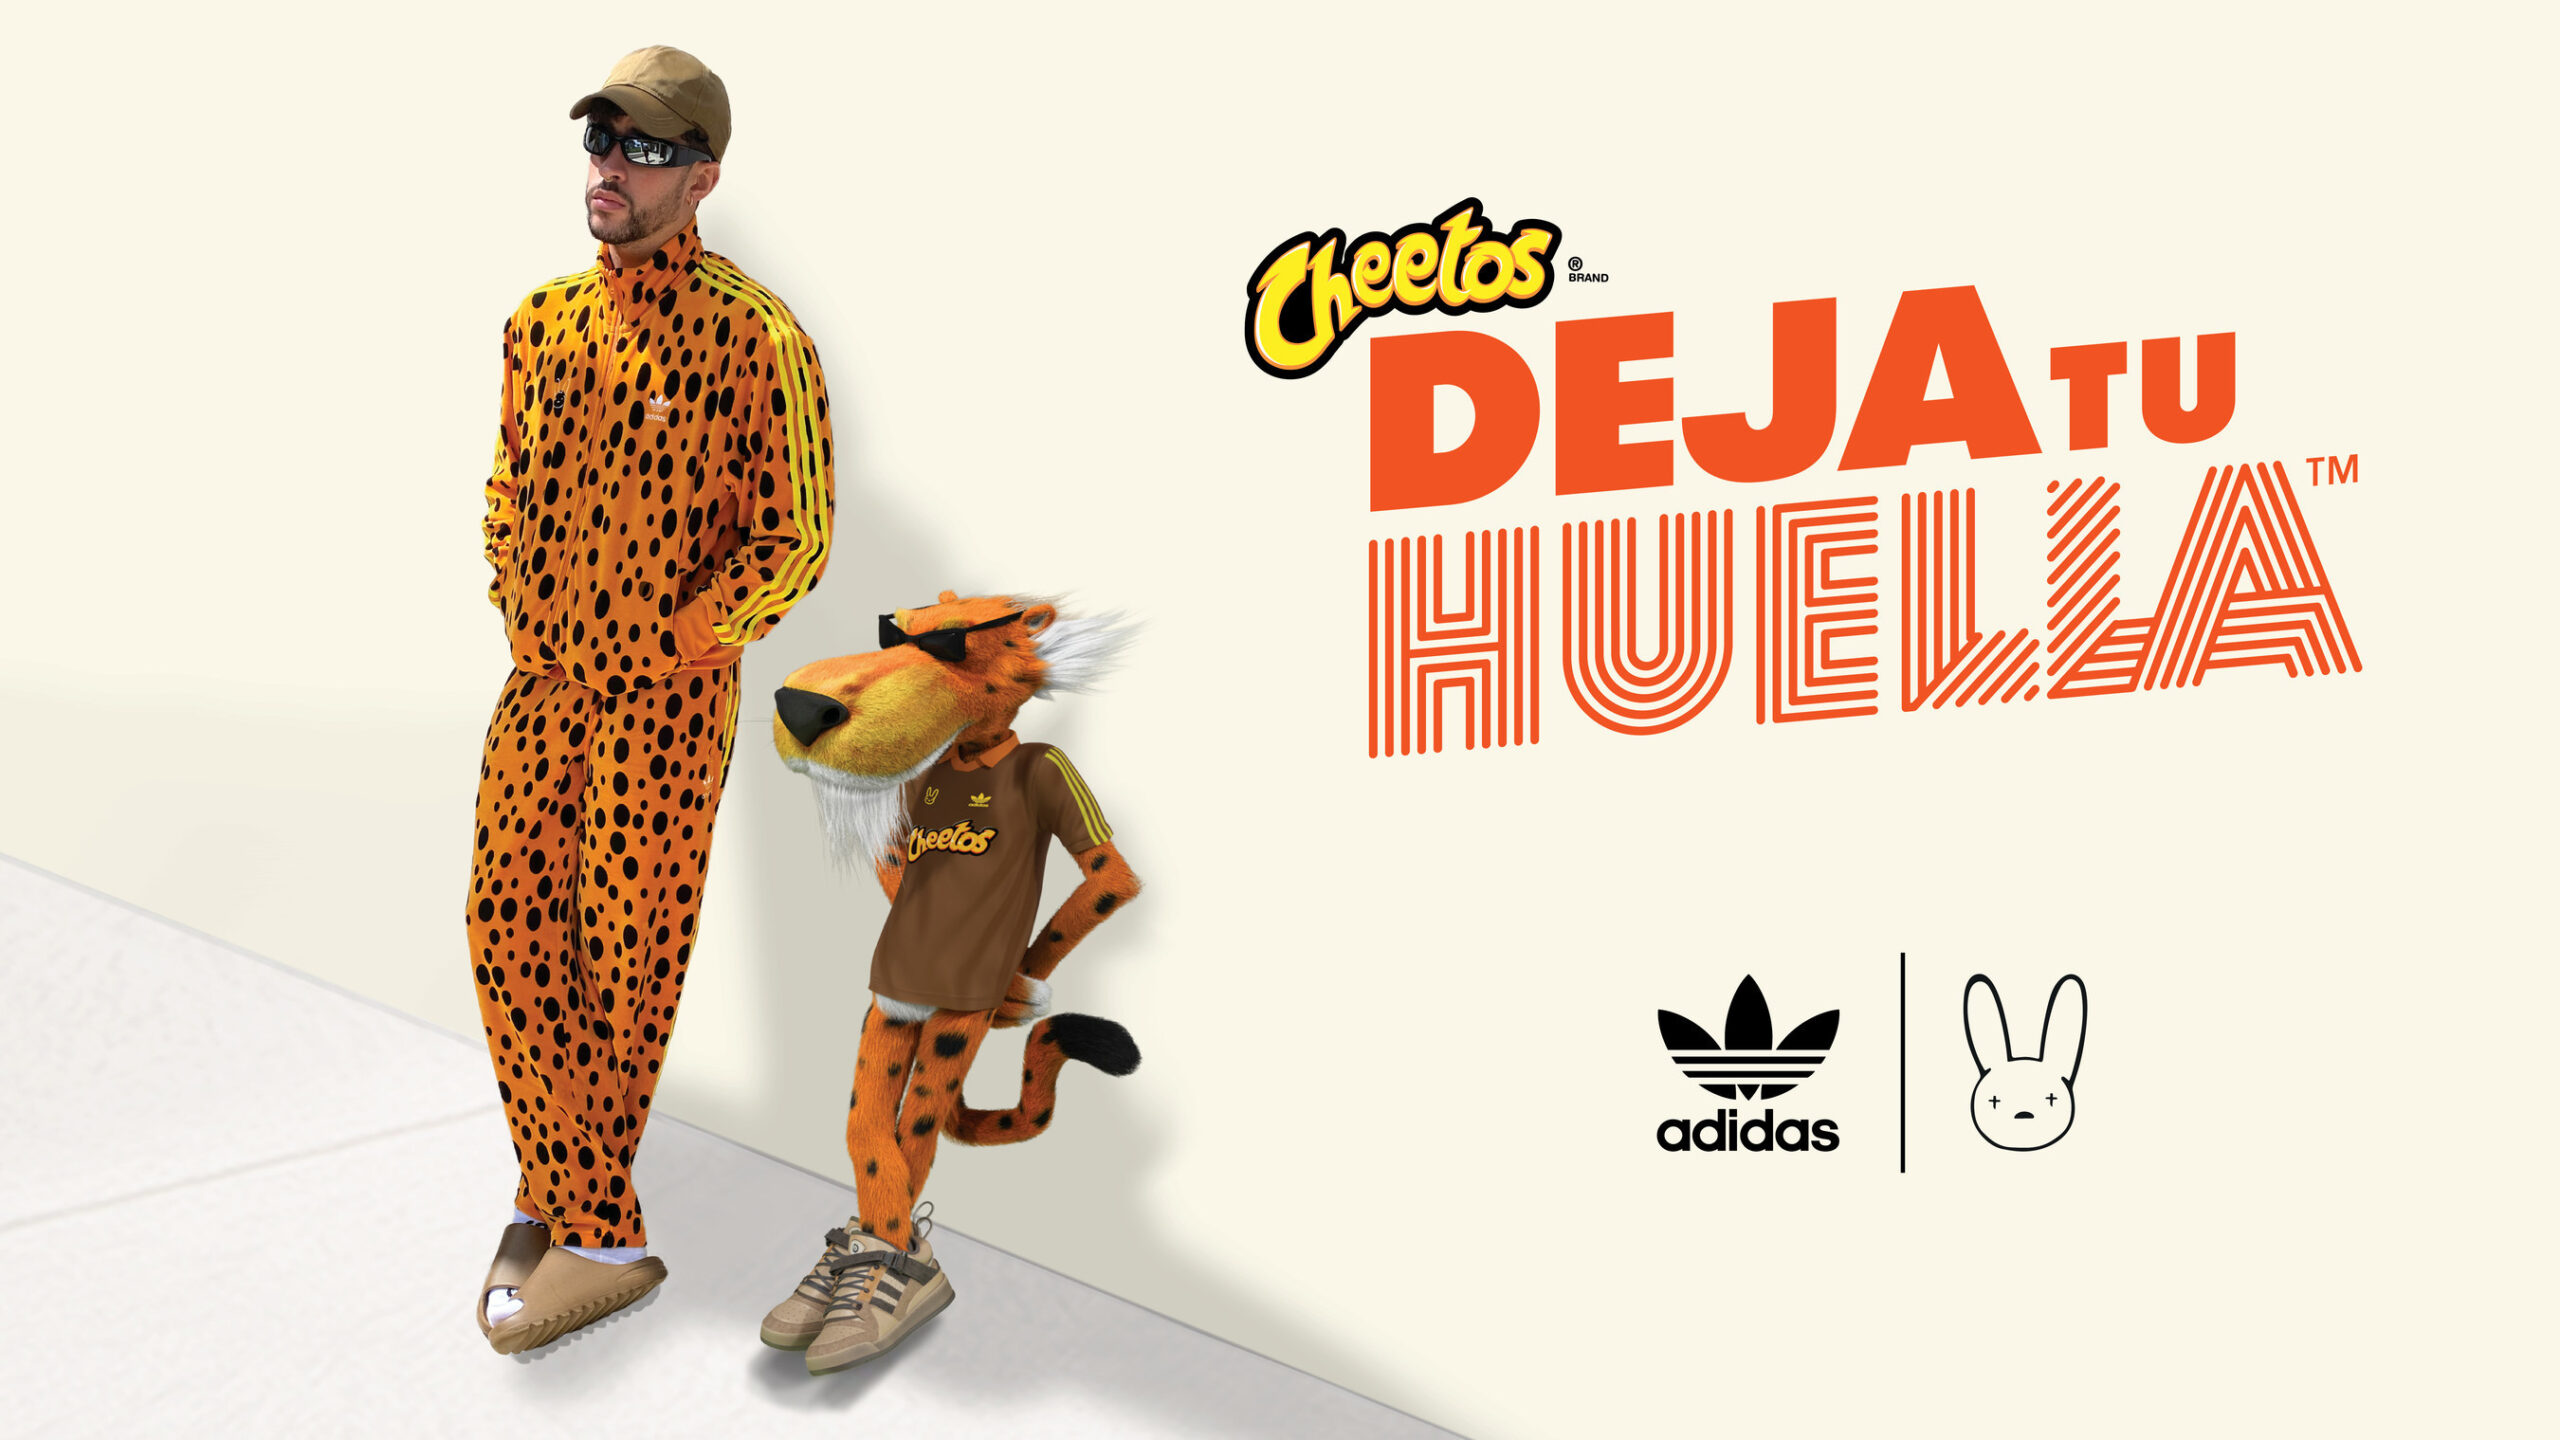 Cheetos y Bad Bunny lanzan exclusiva colección de moda junto a Adidas, invitando a fans a Dejar su Huella